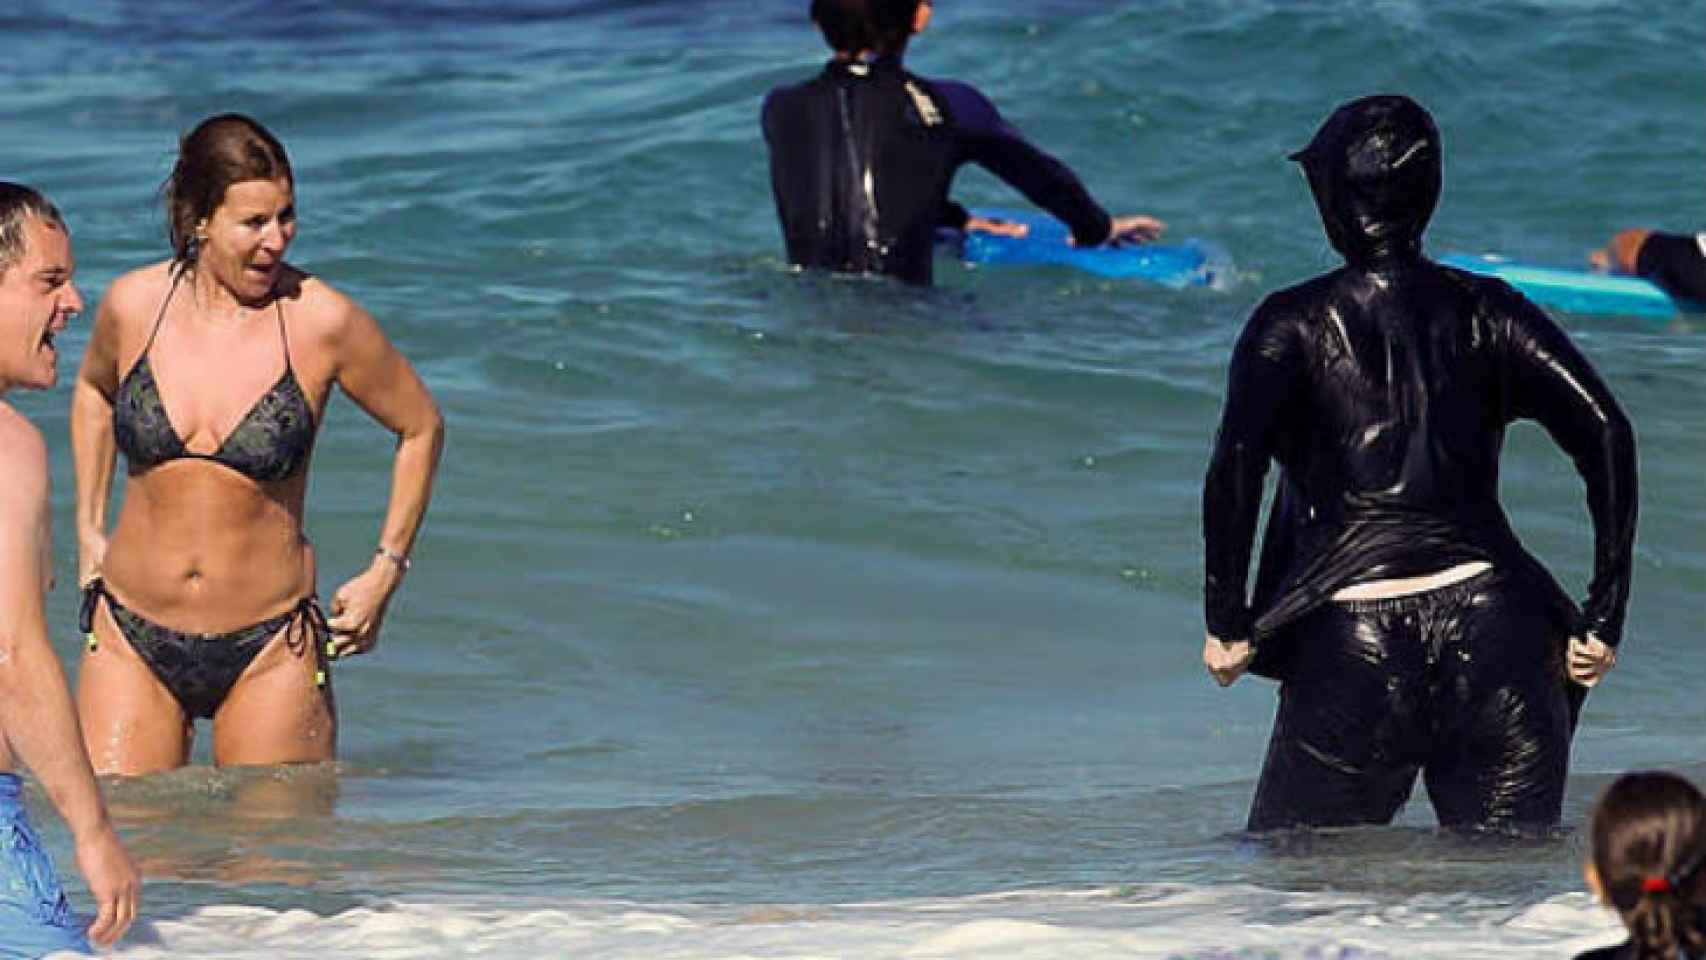 Hay que prohibir el burka musulman como lo hizo Francia Actualidad_147999836_13314277_1706x960